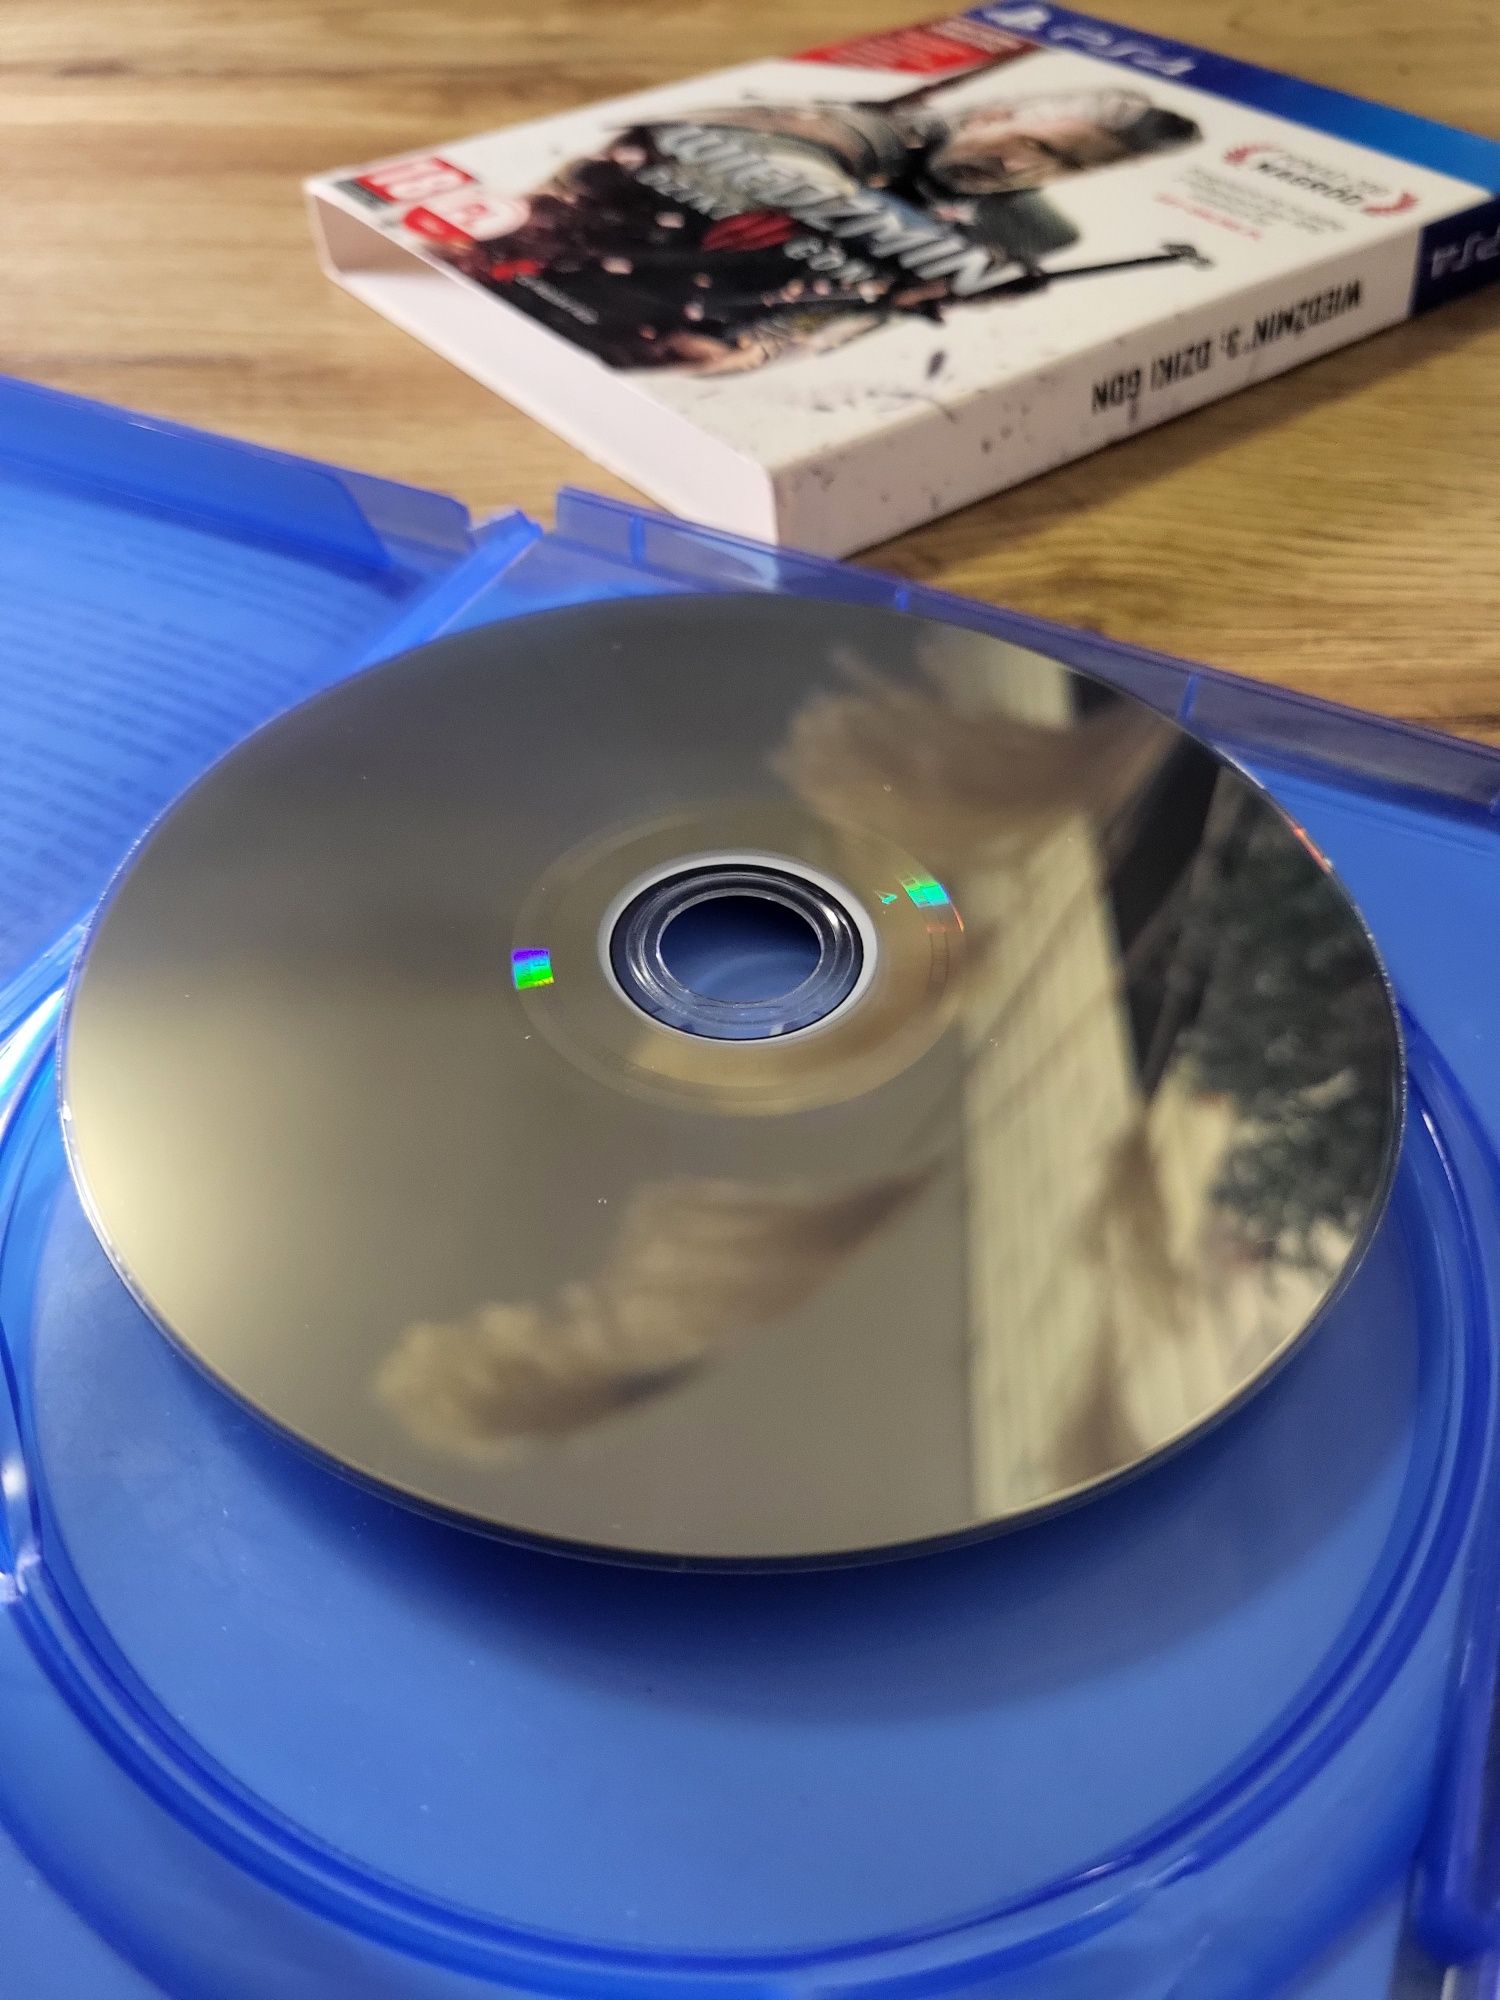 Wiedzmin 3 dziki gon III gra na konsole PlayStation 4 sony PS 5 SLIM